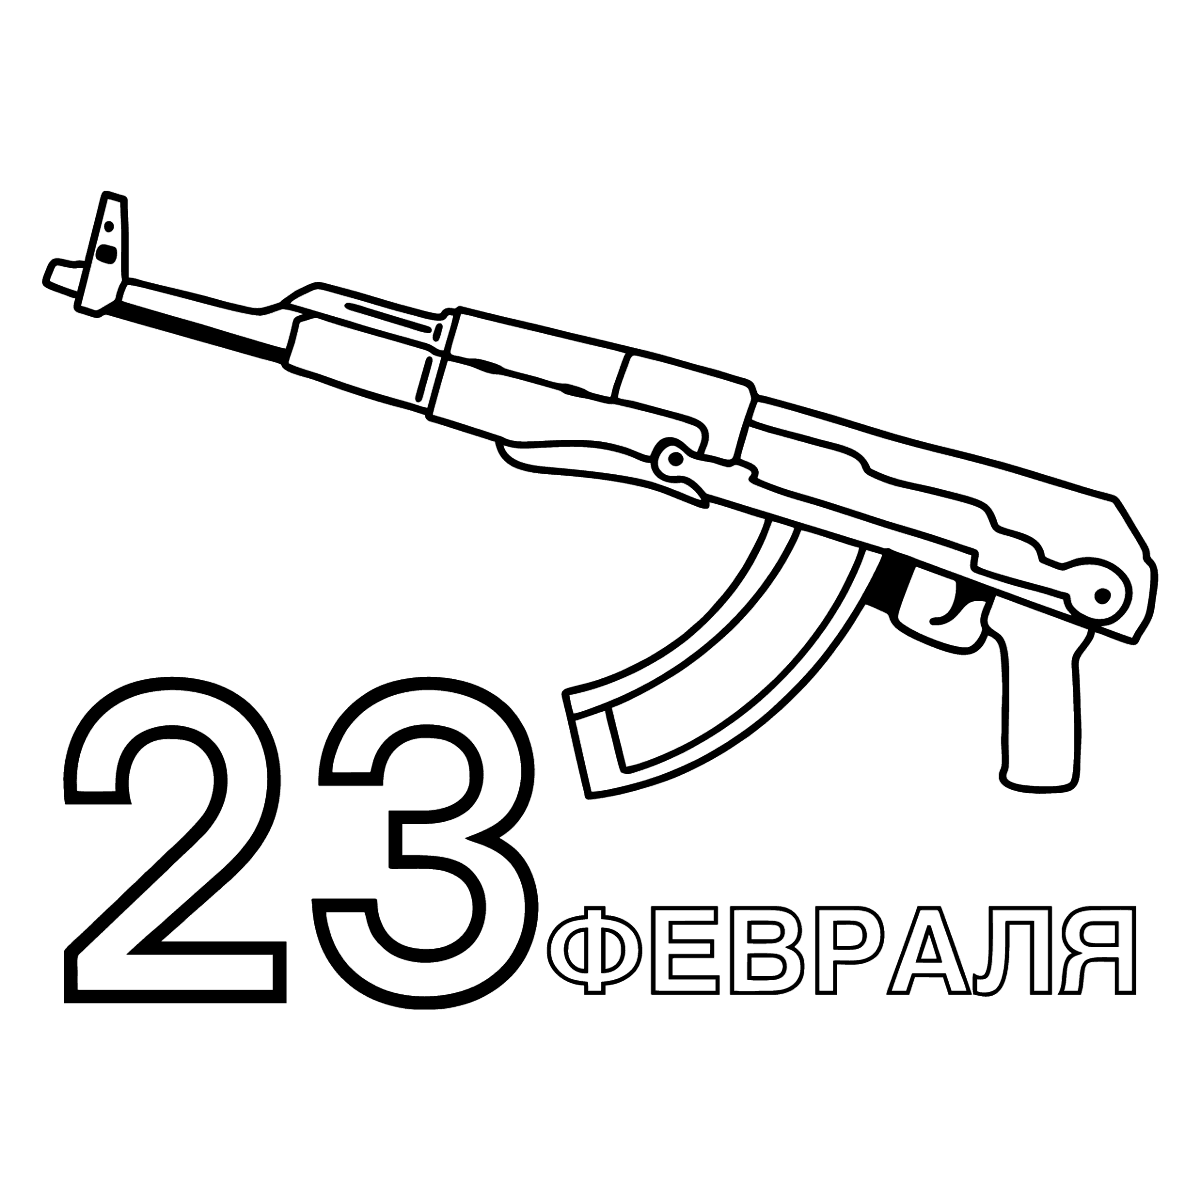 Пиксельный автомат Калашникова АК-47